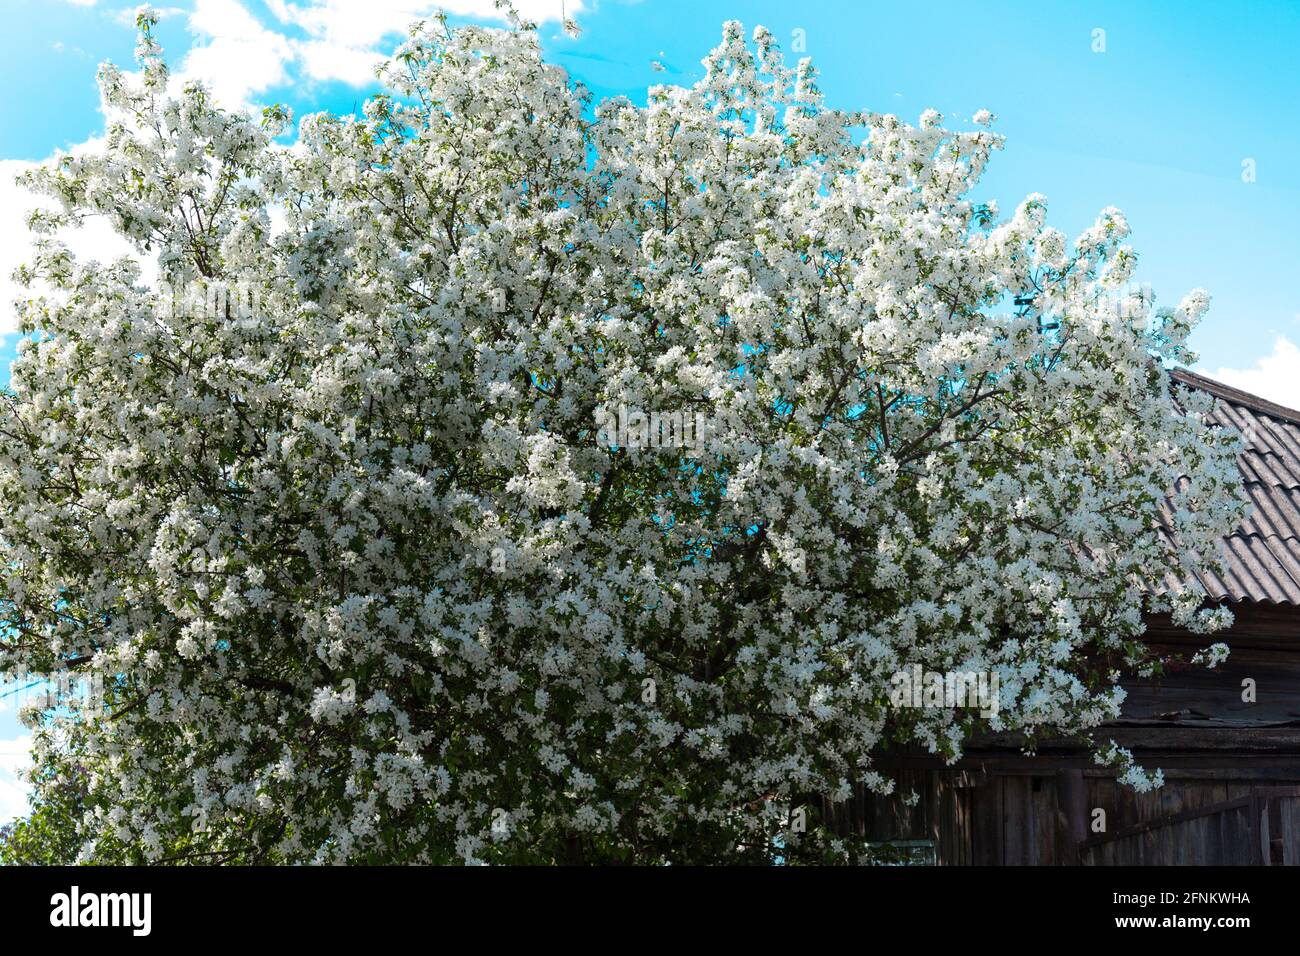 Ein dichter Apfelbusch blüht im frühen Frühjahr früh Mai gegen einen blauen Himmel Stockfoto